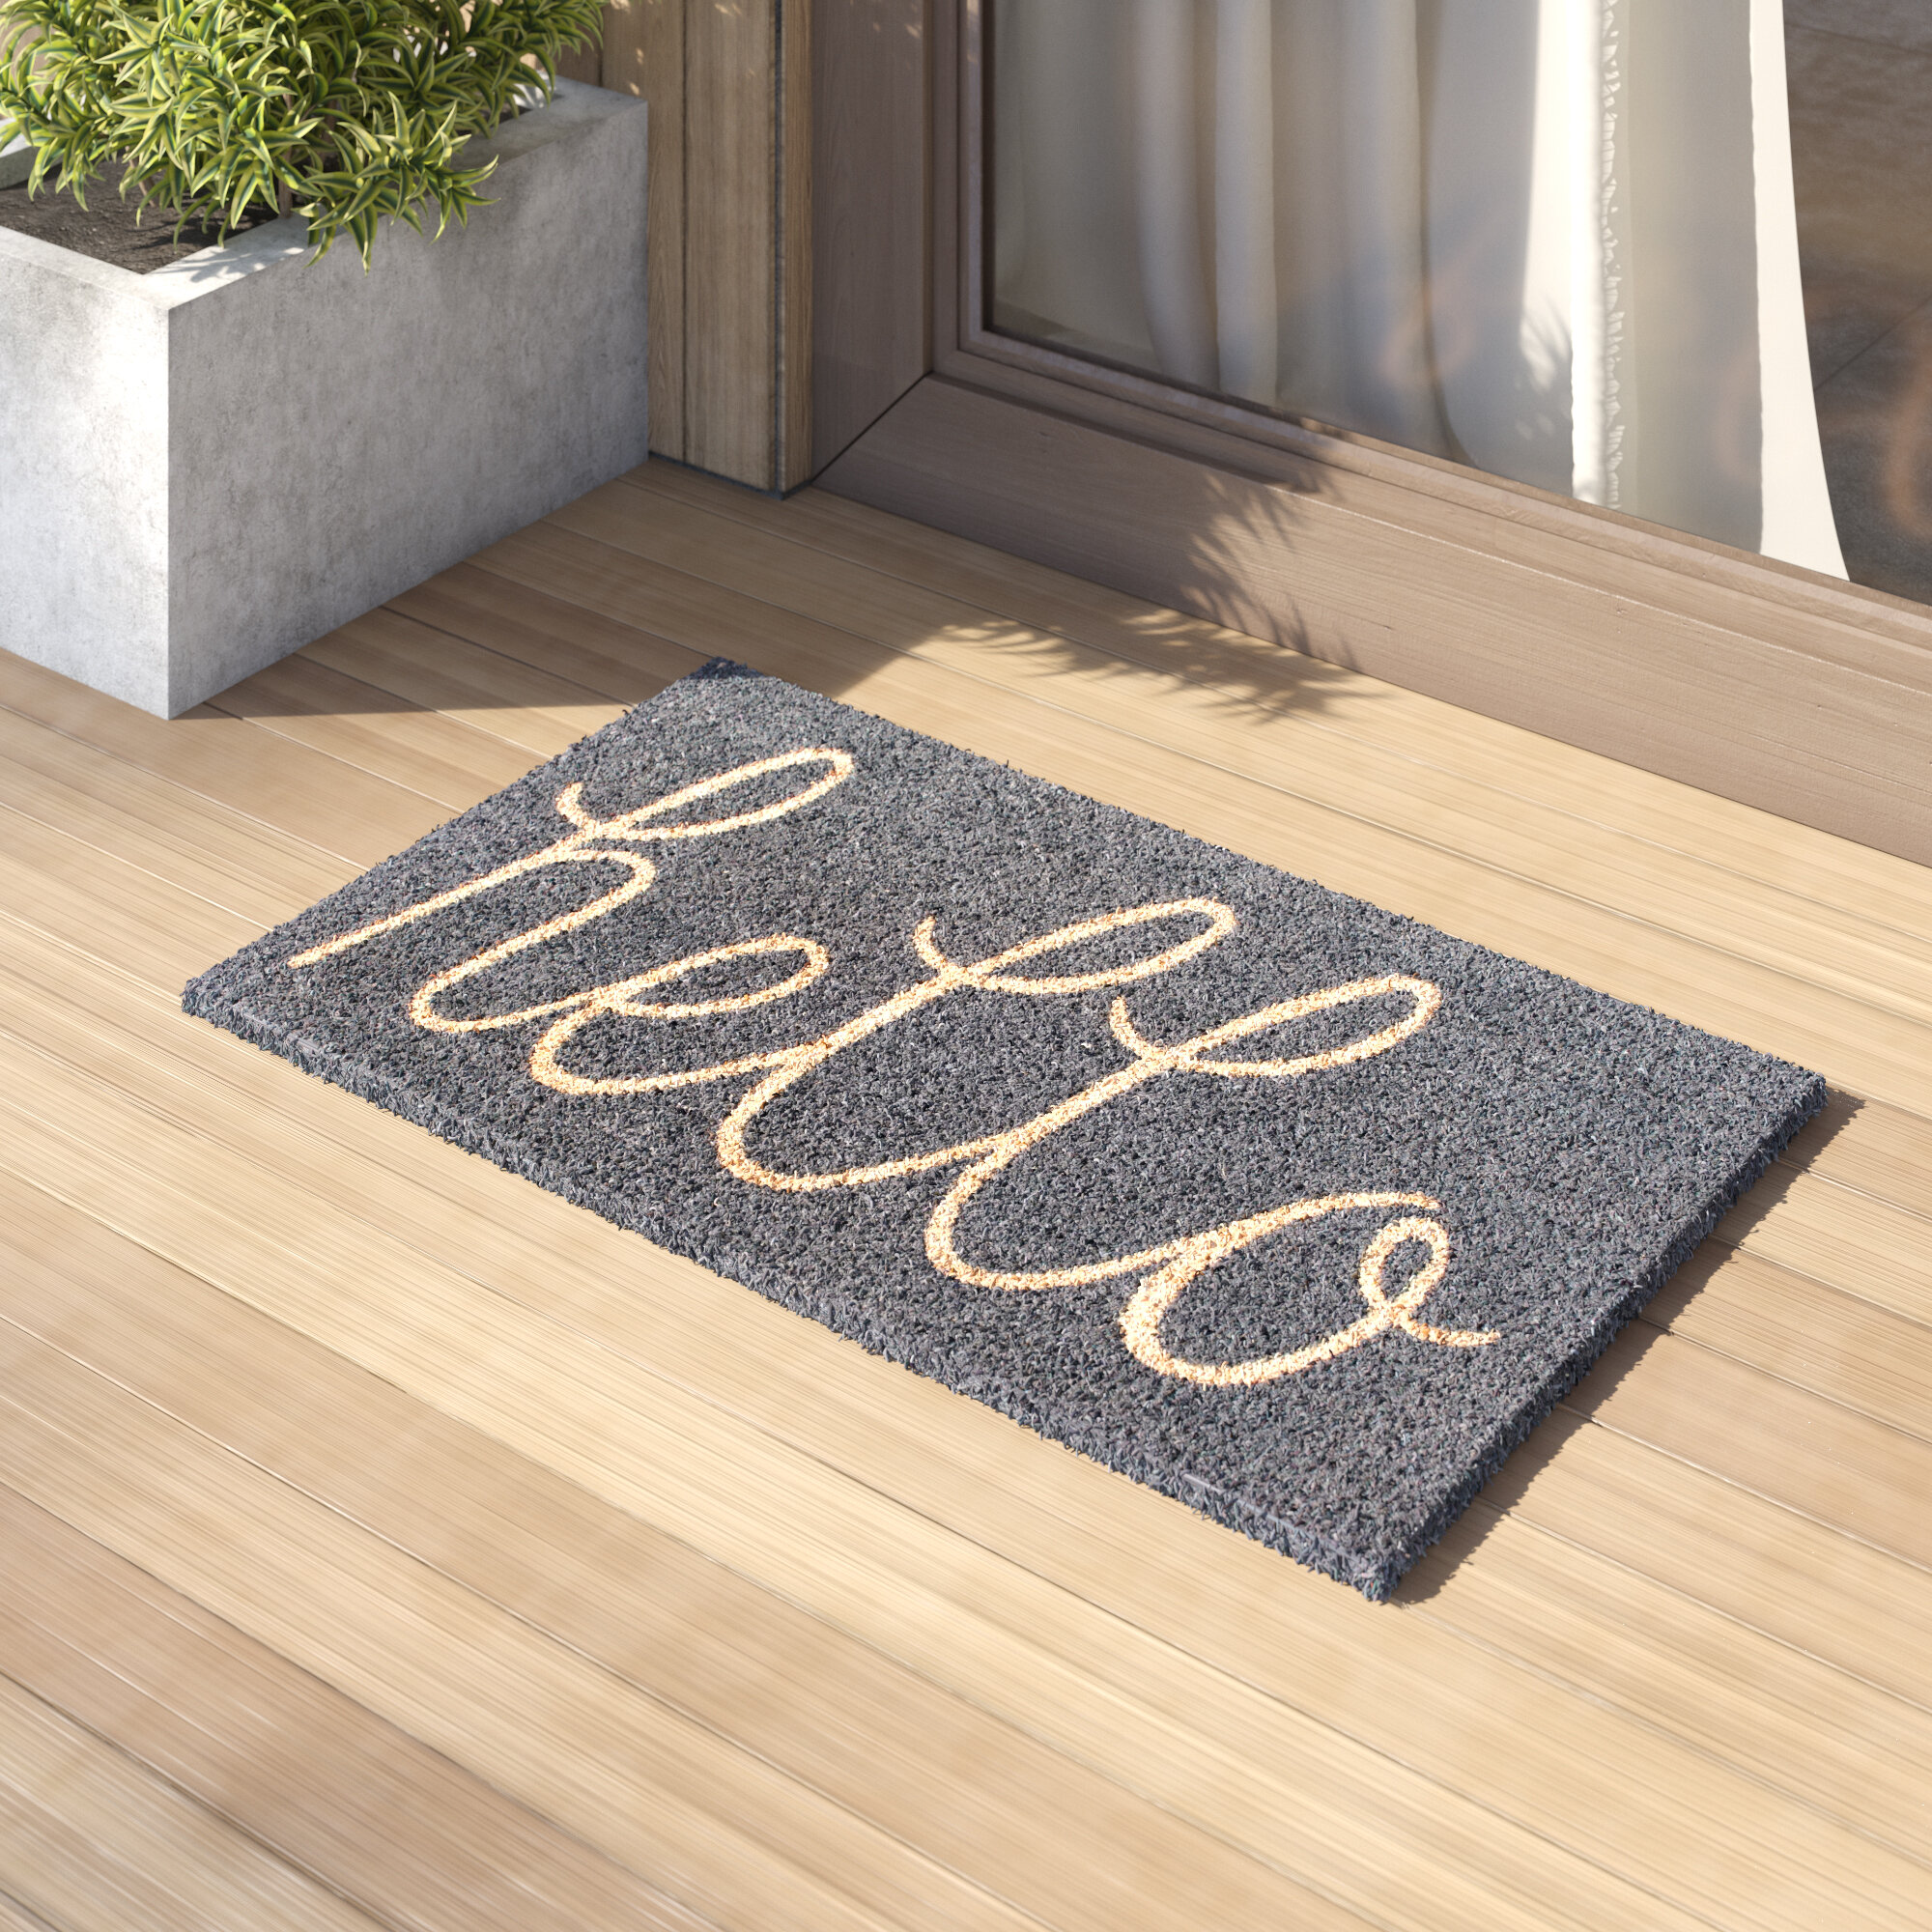 Home Entrance Floor Doormat Rug Non-slip Carpet Indoor Outdoor Door Mat 30"x18" 